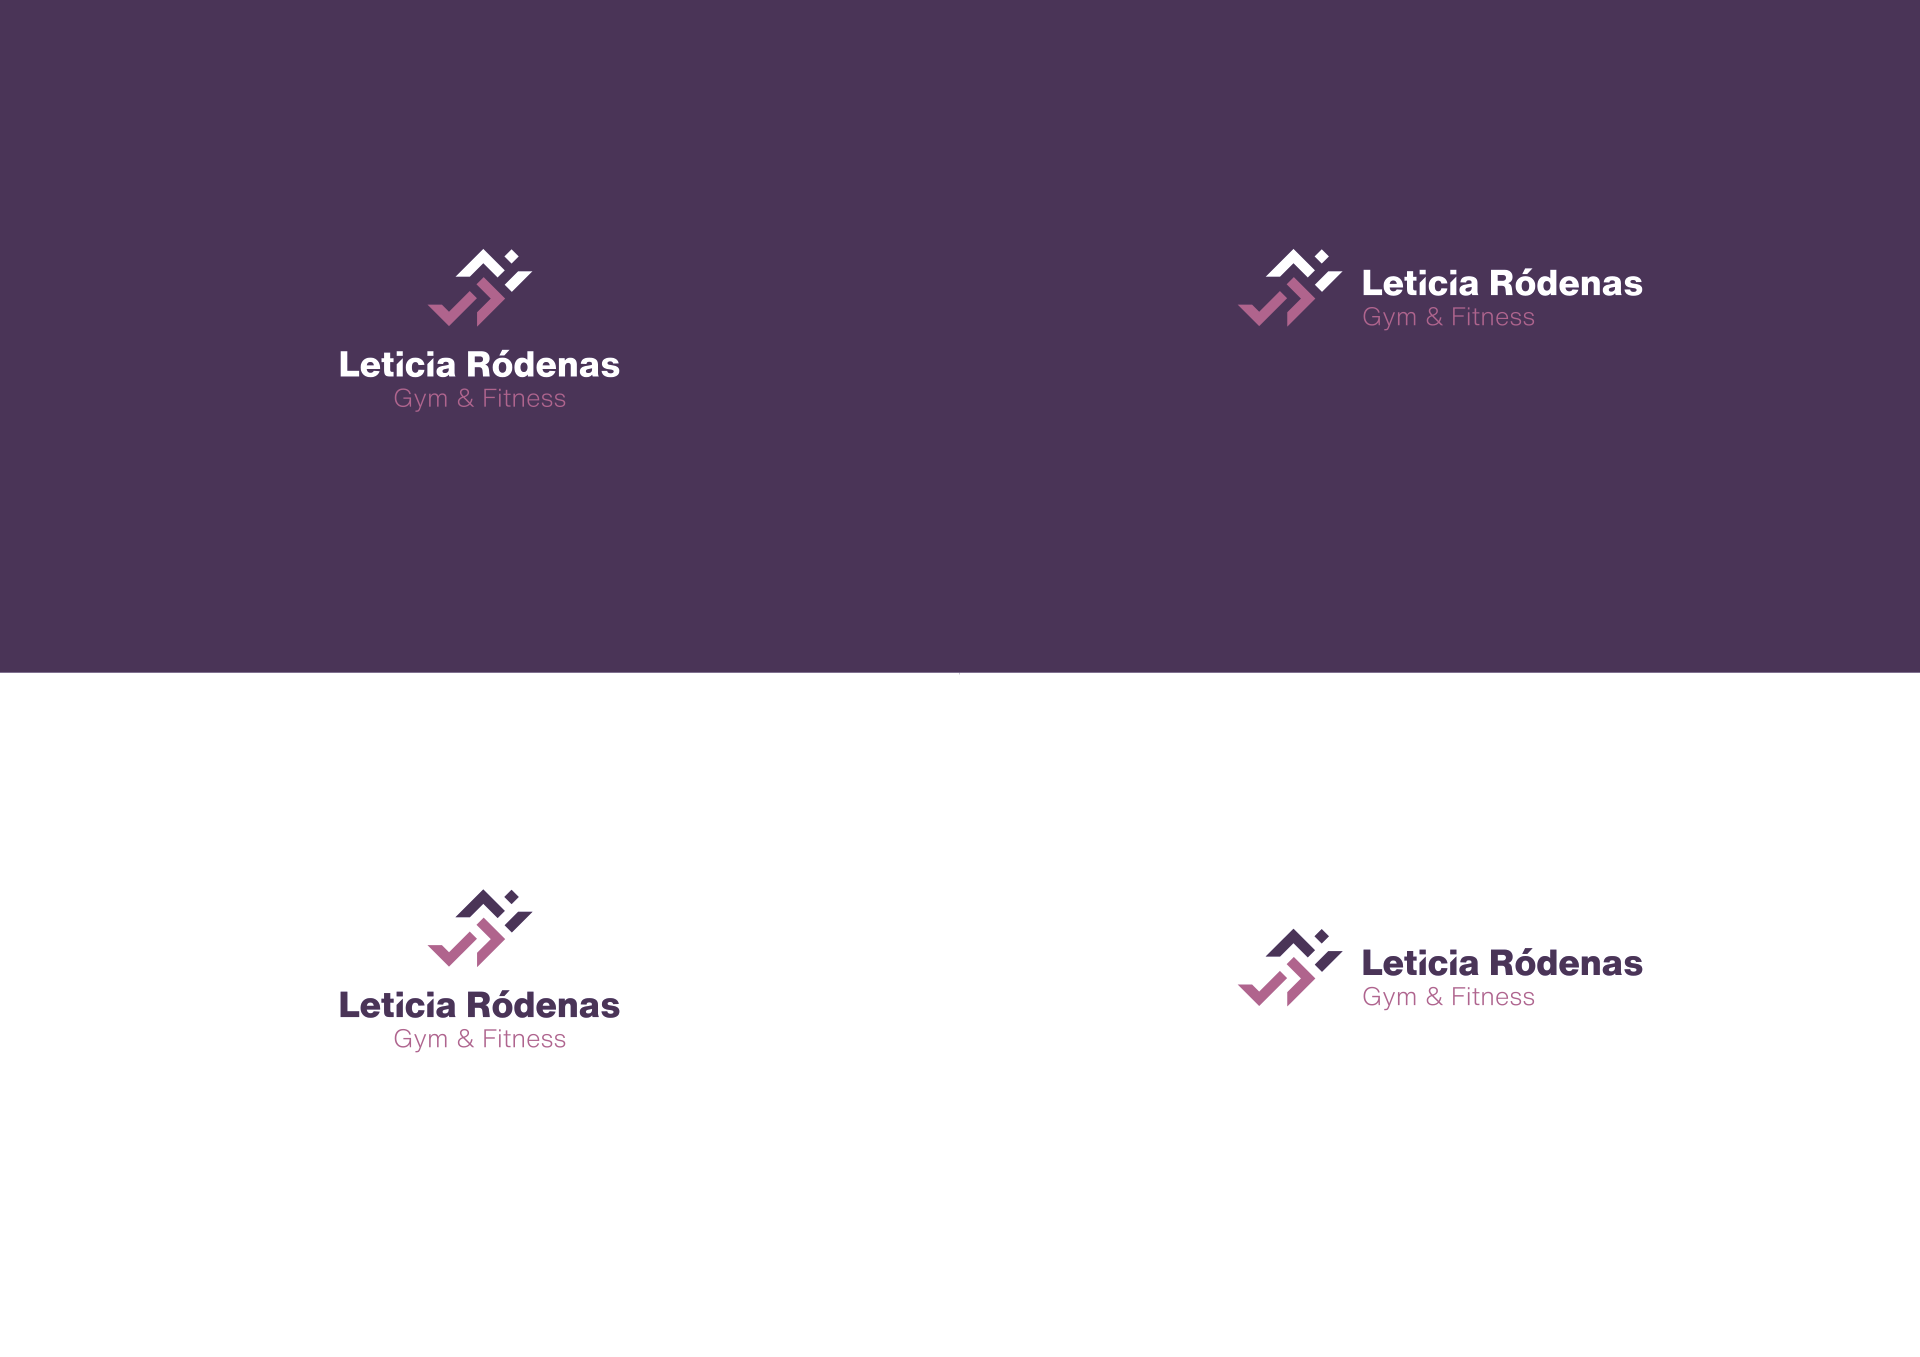 versiones_logotipo_leticia_rodenas